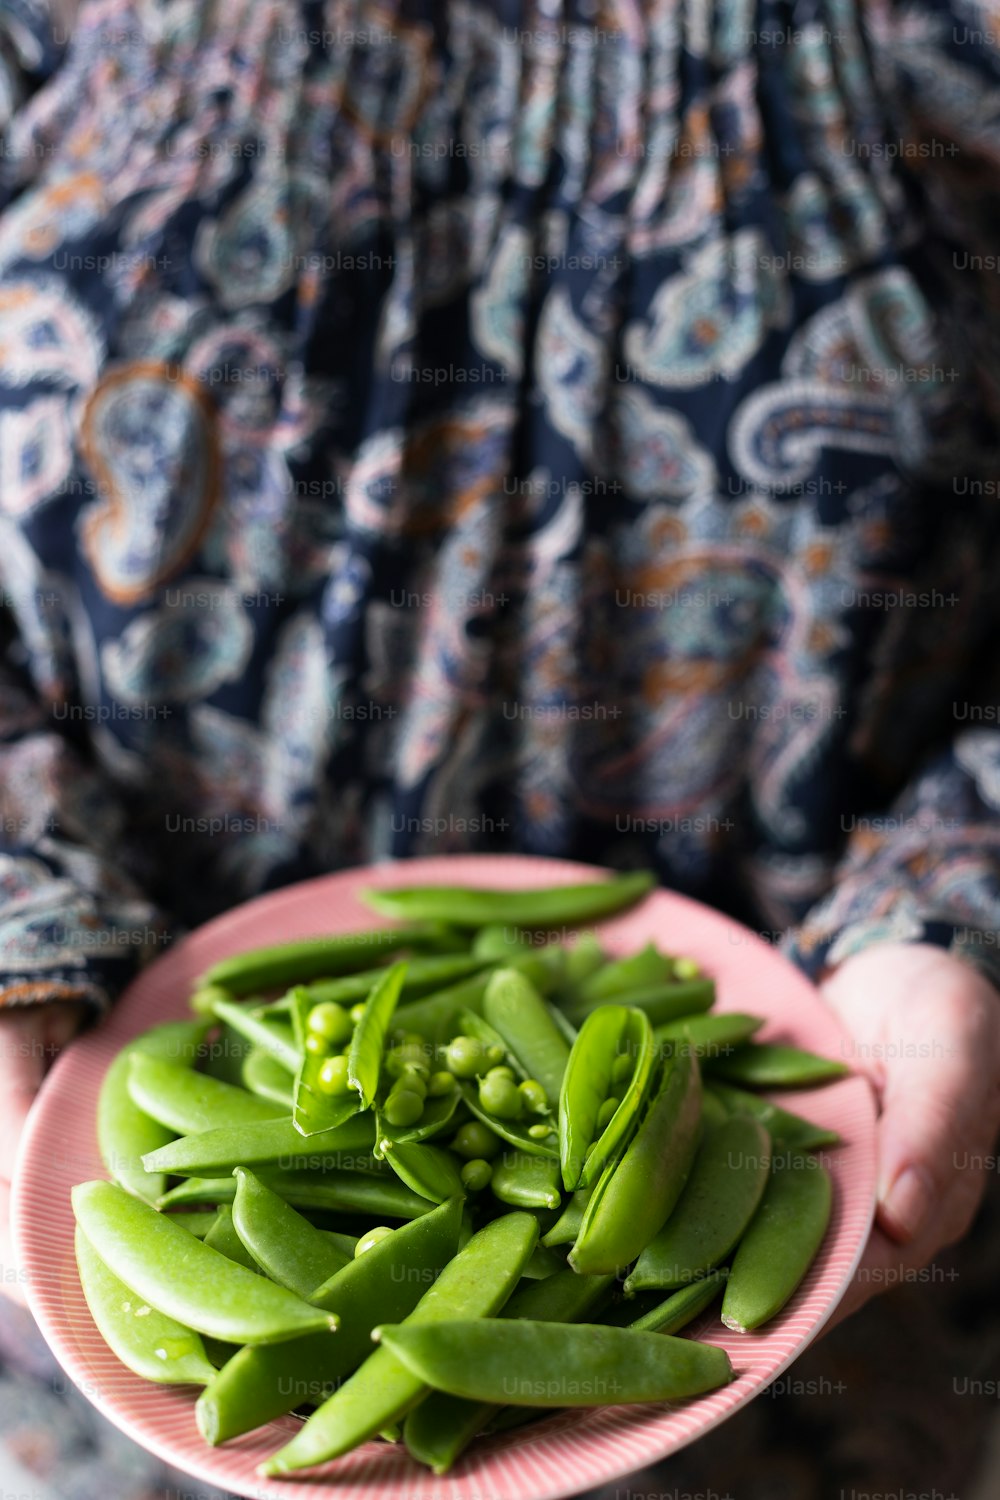 una persona sosteniendo un plato de judías verdes